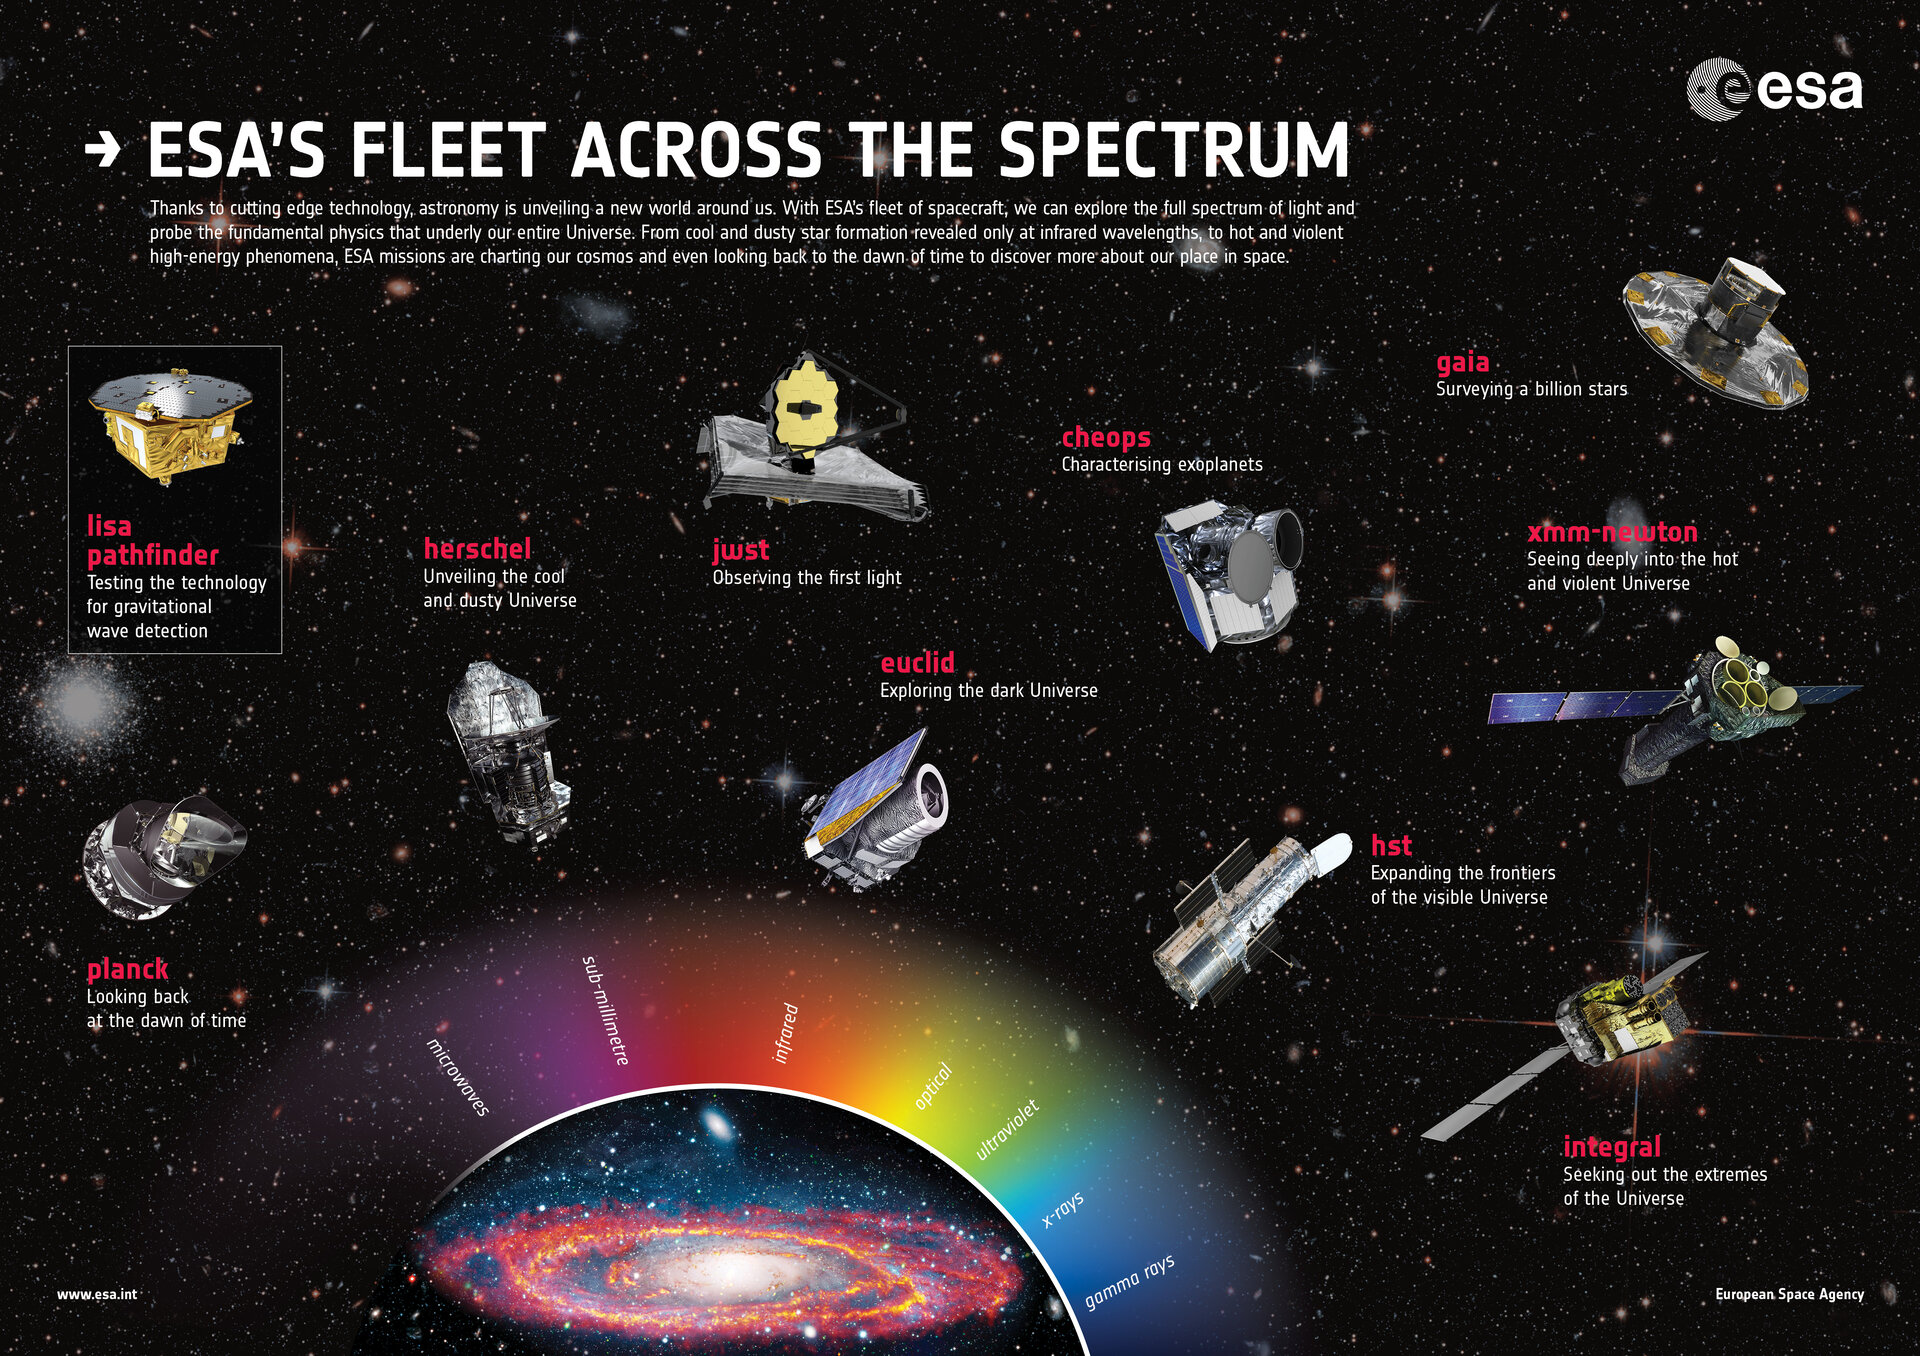 esa-esa-s-fleet-across-the-spectrum-poster-2017